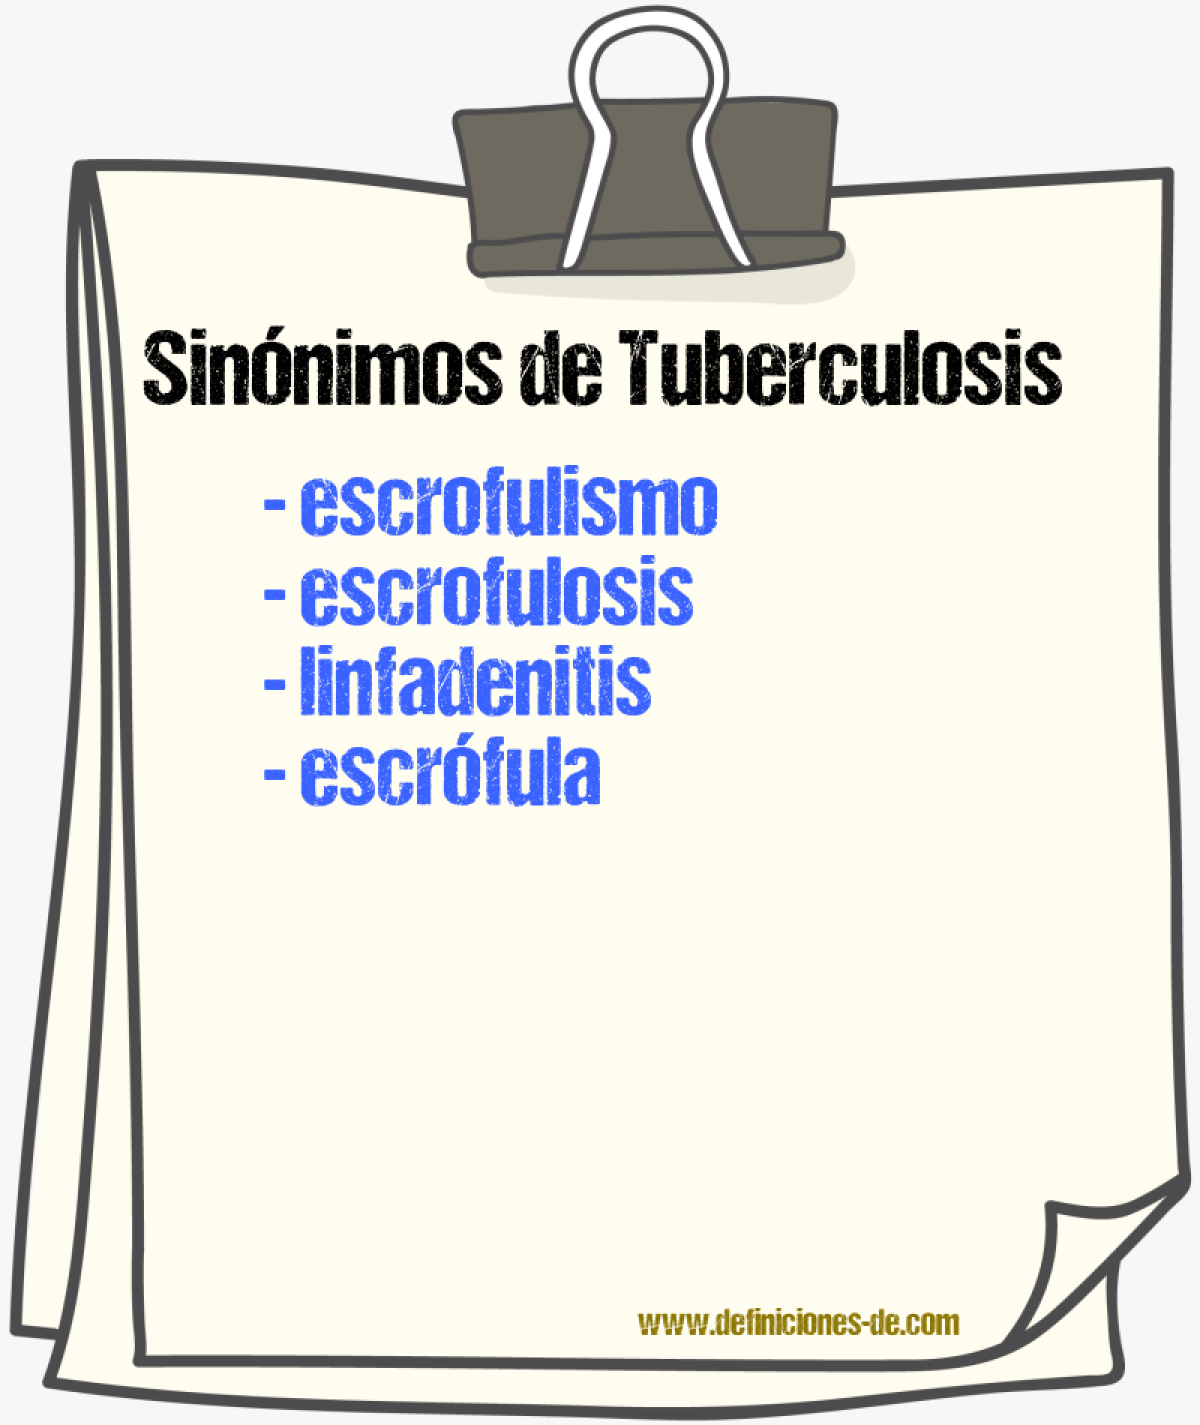 Sinnimos de tuberculosis